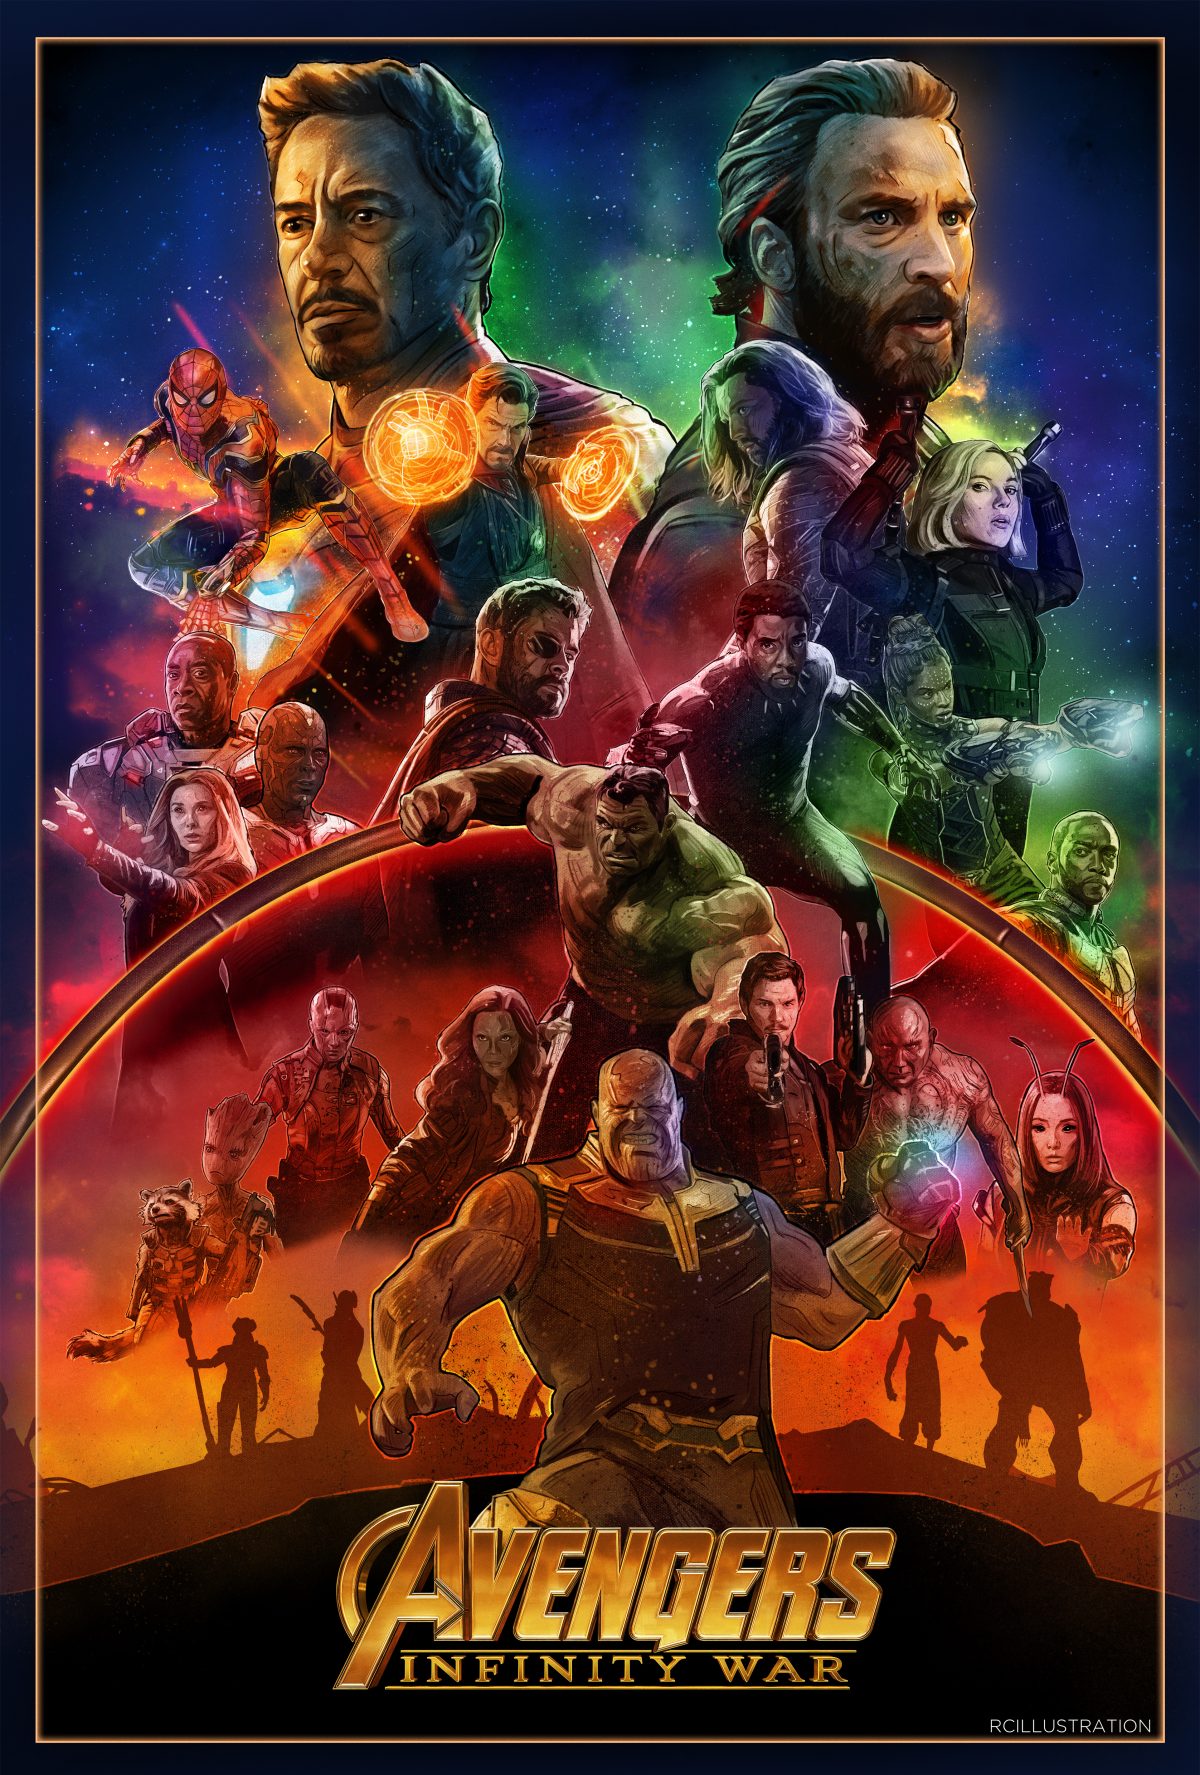 Avengers: Infinity War download